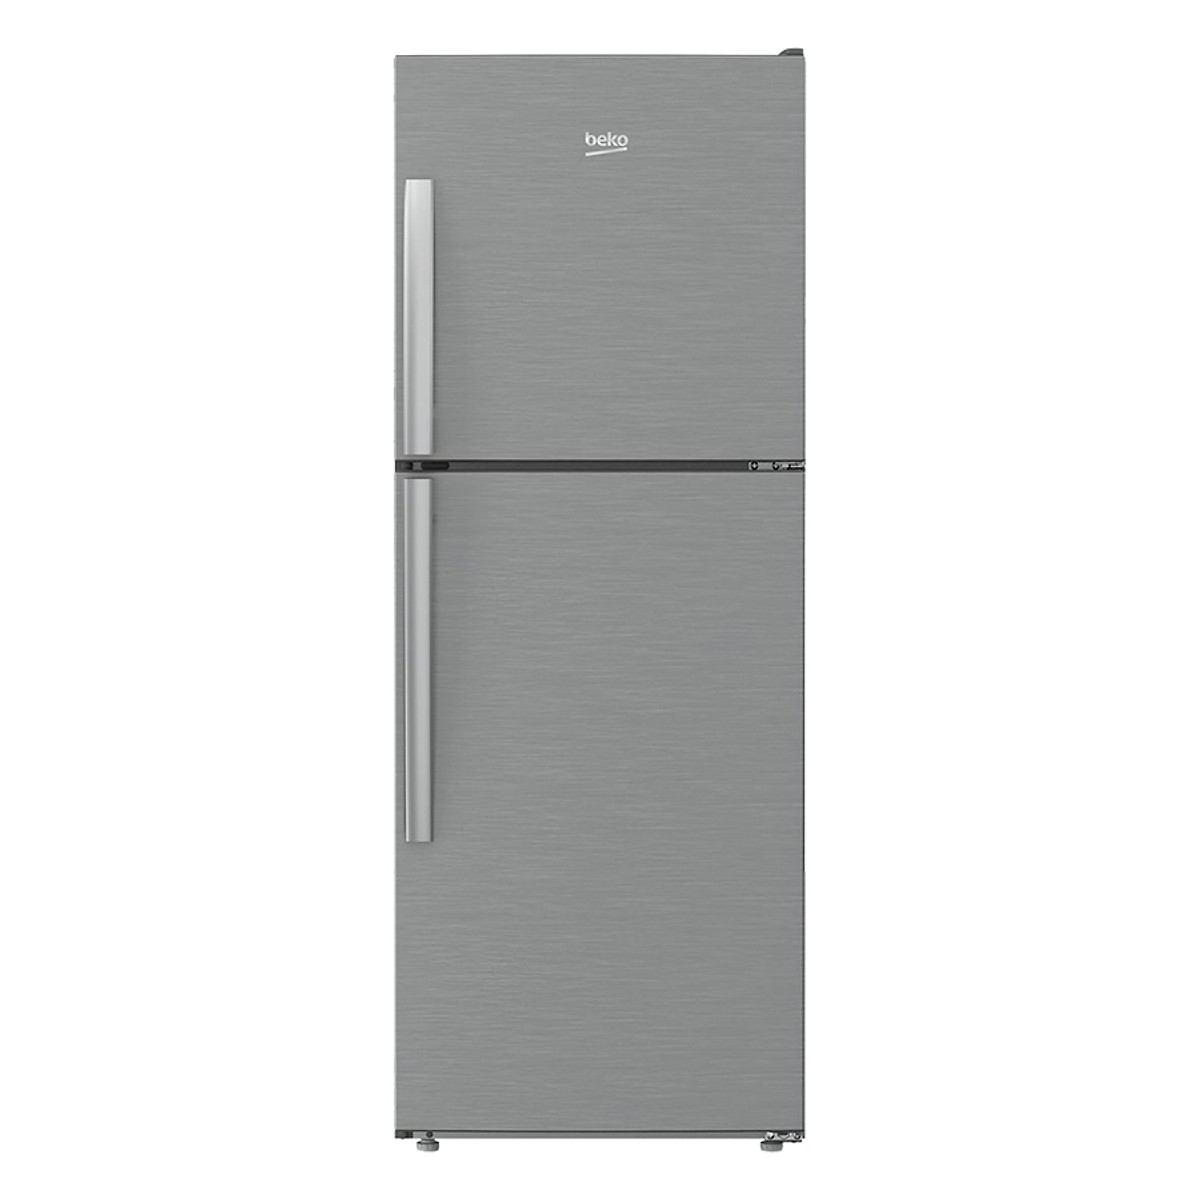 Tủ Lạnh Beko Inverter 230 Lít RDNT230I55VZX - Hàng Chính Hãng